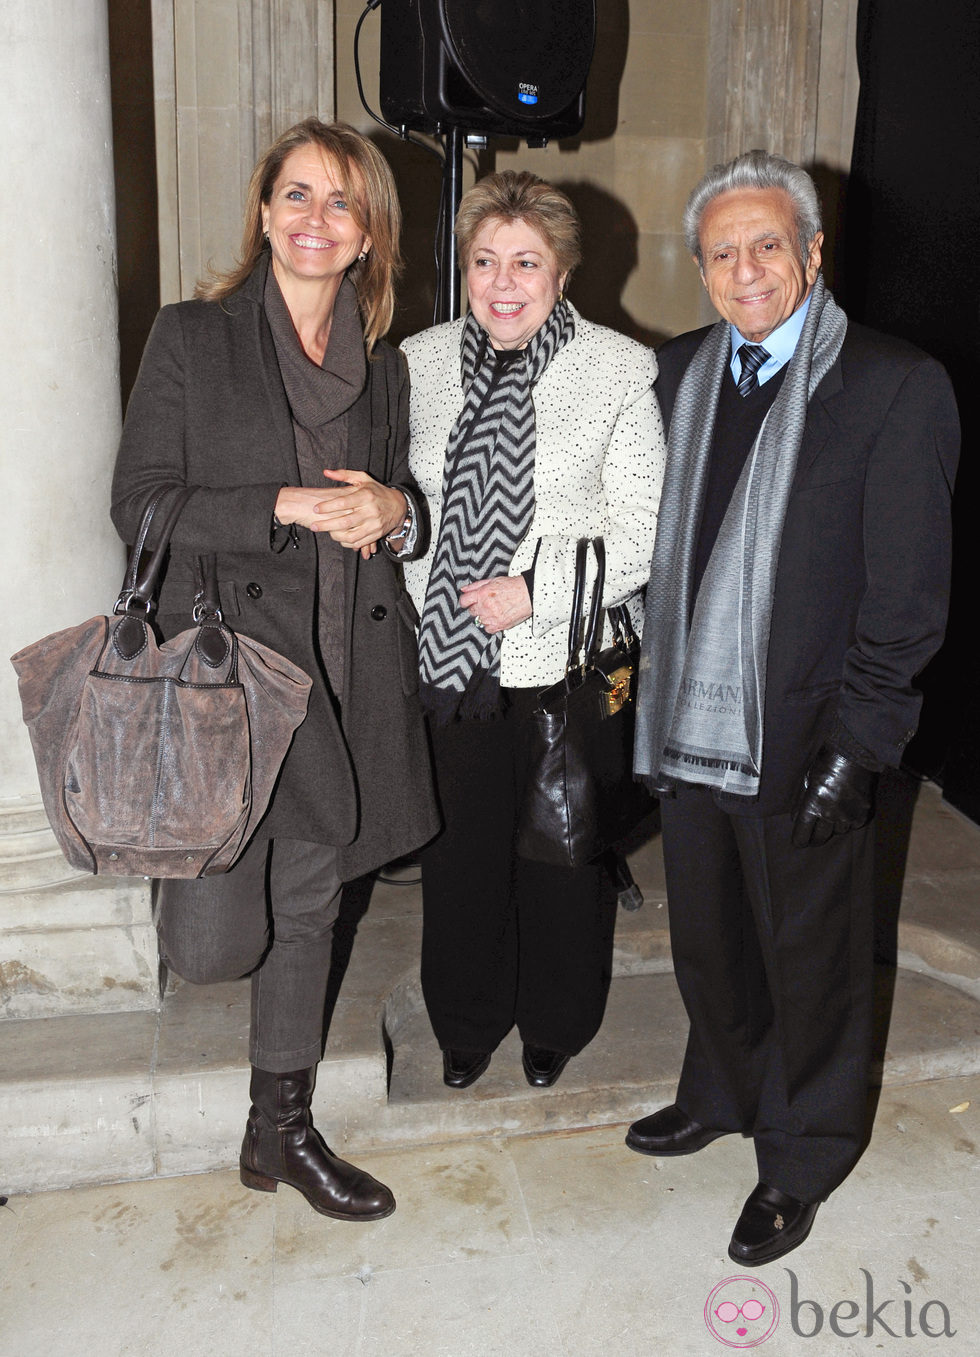 La madre de Piqué y los padres de Shakira en la inauguración de la exposición de Jaume de Laiguana